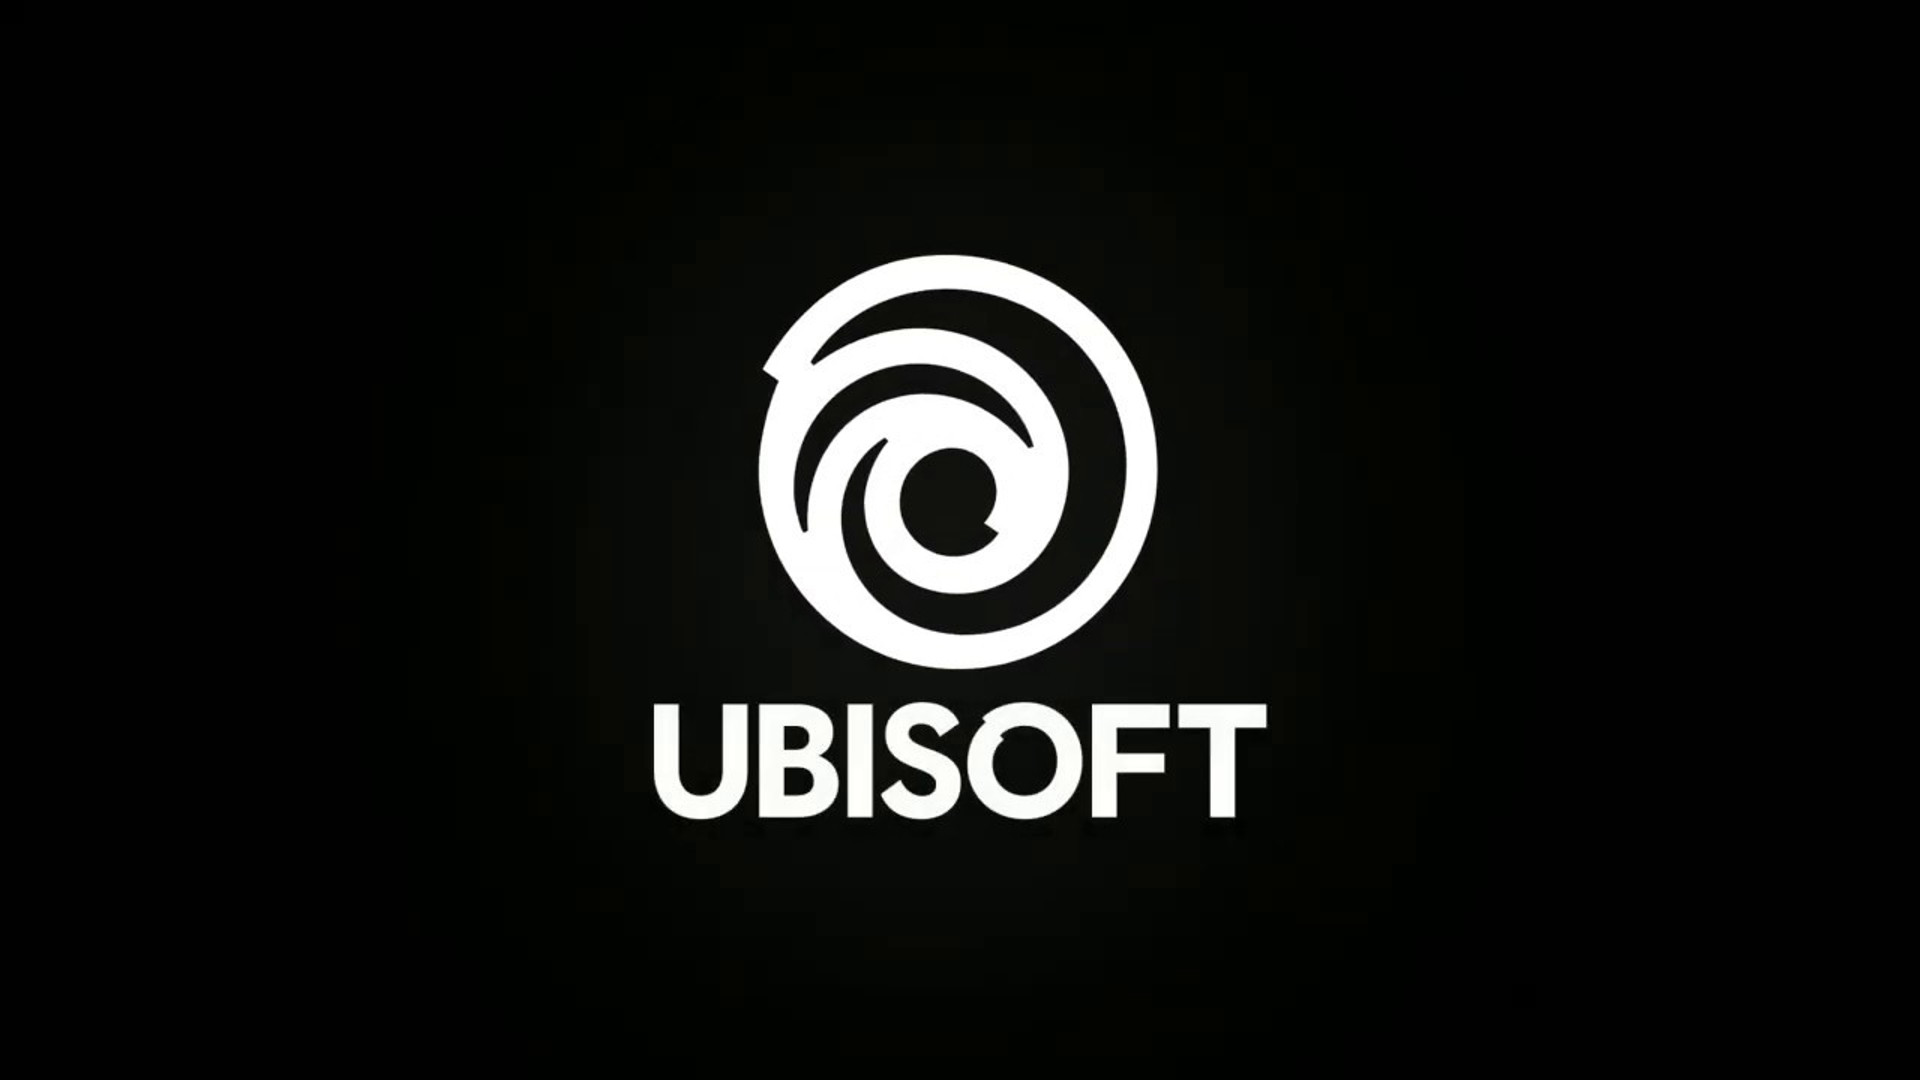 يدعو موظفو Ubisoft الإدارة إلى "الإقرار بمطالبنا بشكل صحيح"